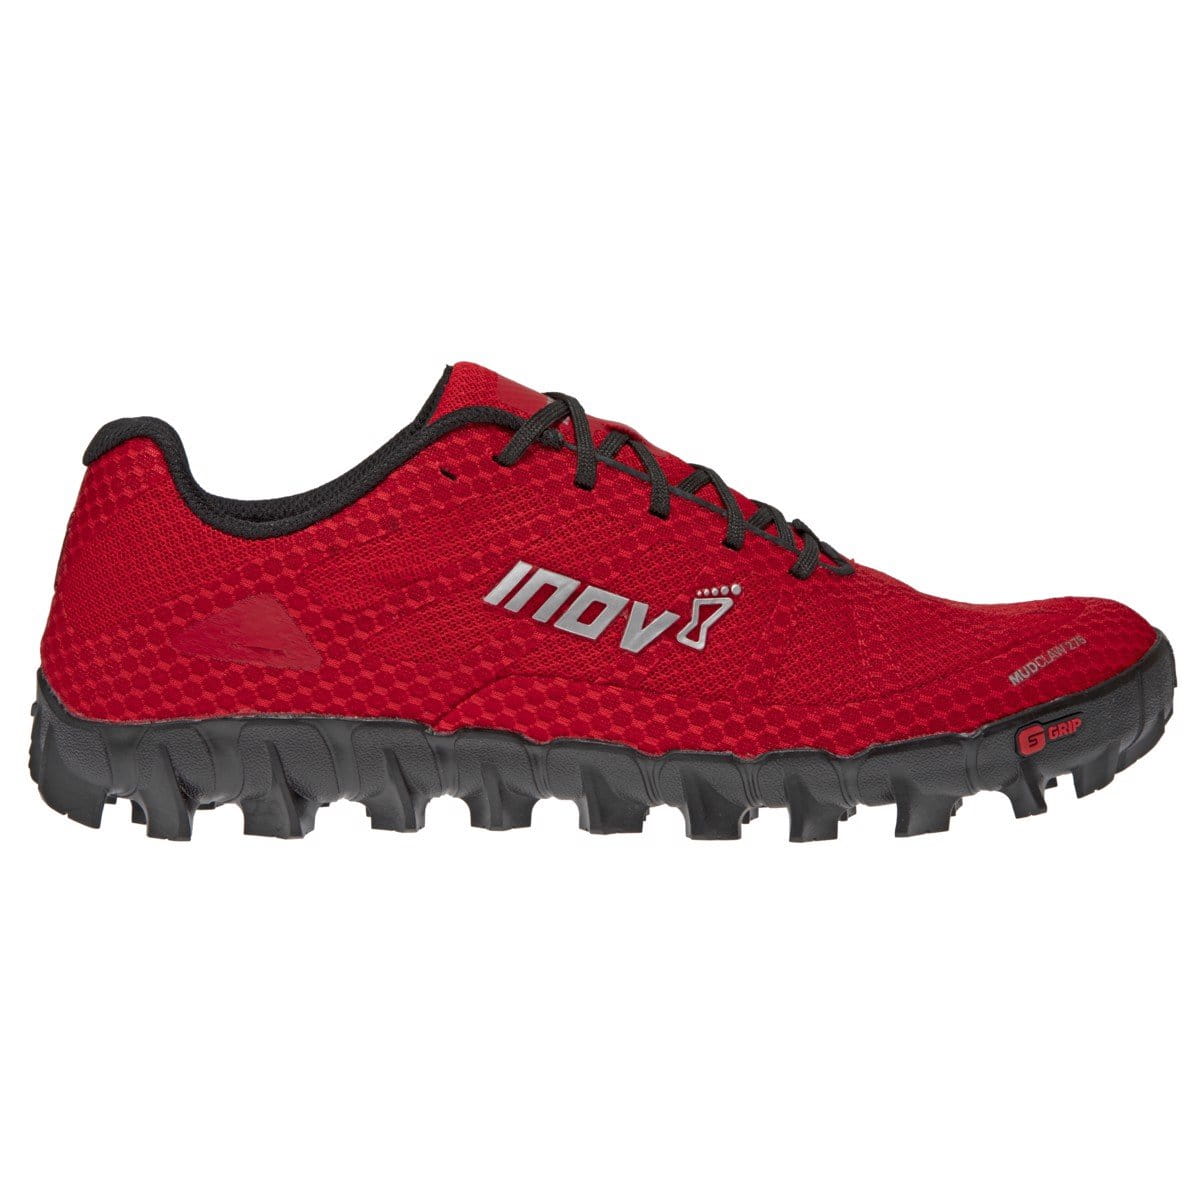 Bežecké topánky Inov-8  MUDCLAW 275 M (P) red/black červená/černá